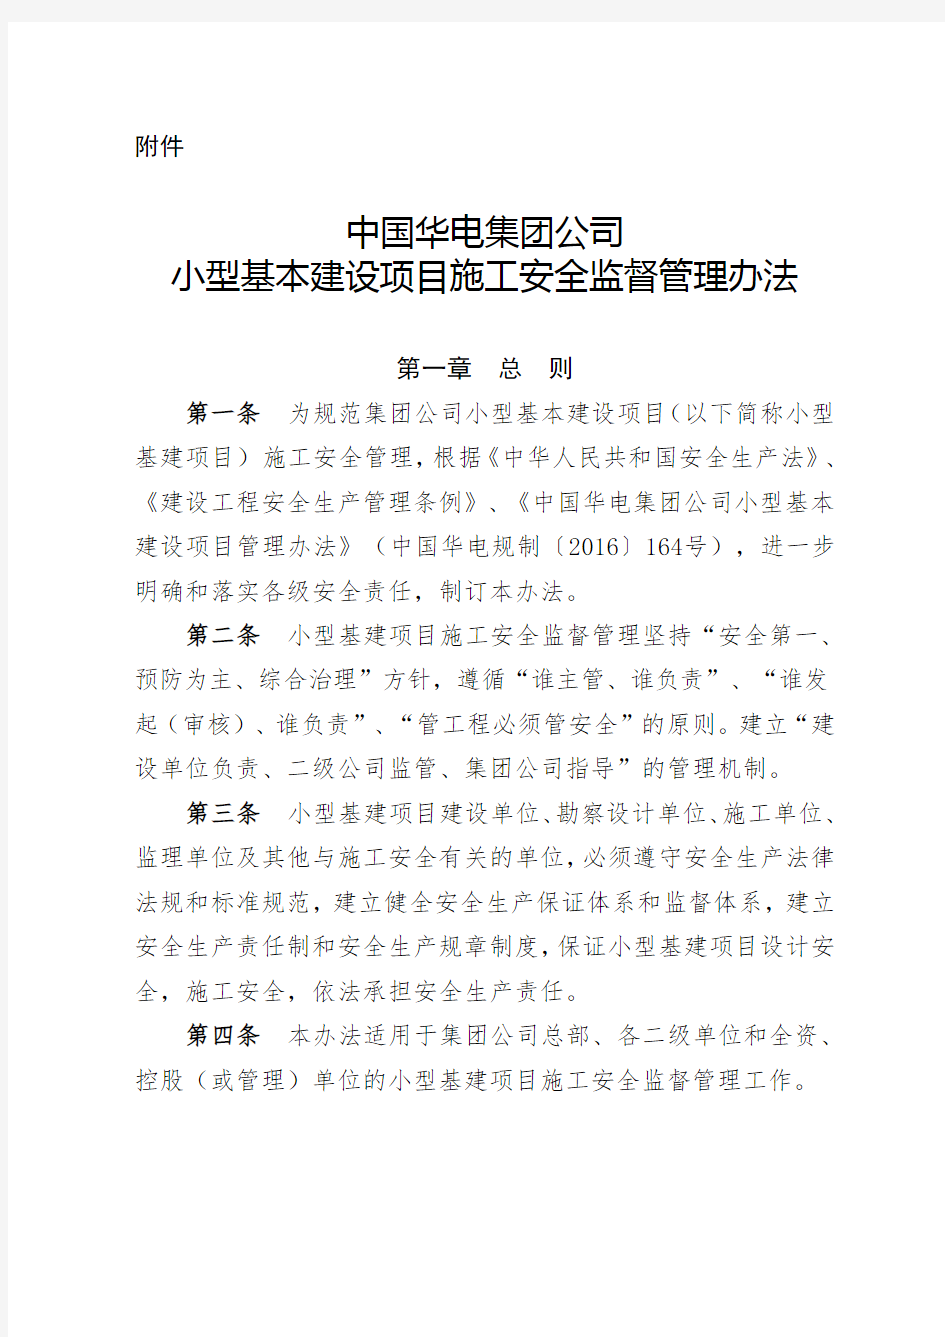 中国华电集团公司小型基本建设项目施工安全监督管理办法(试行)